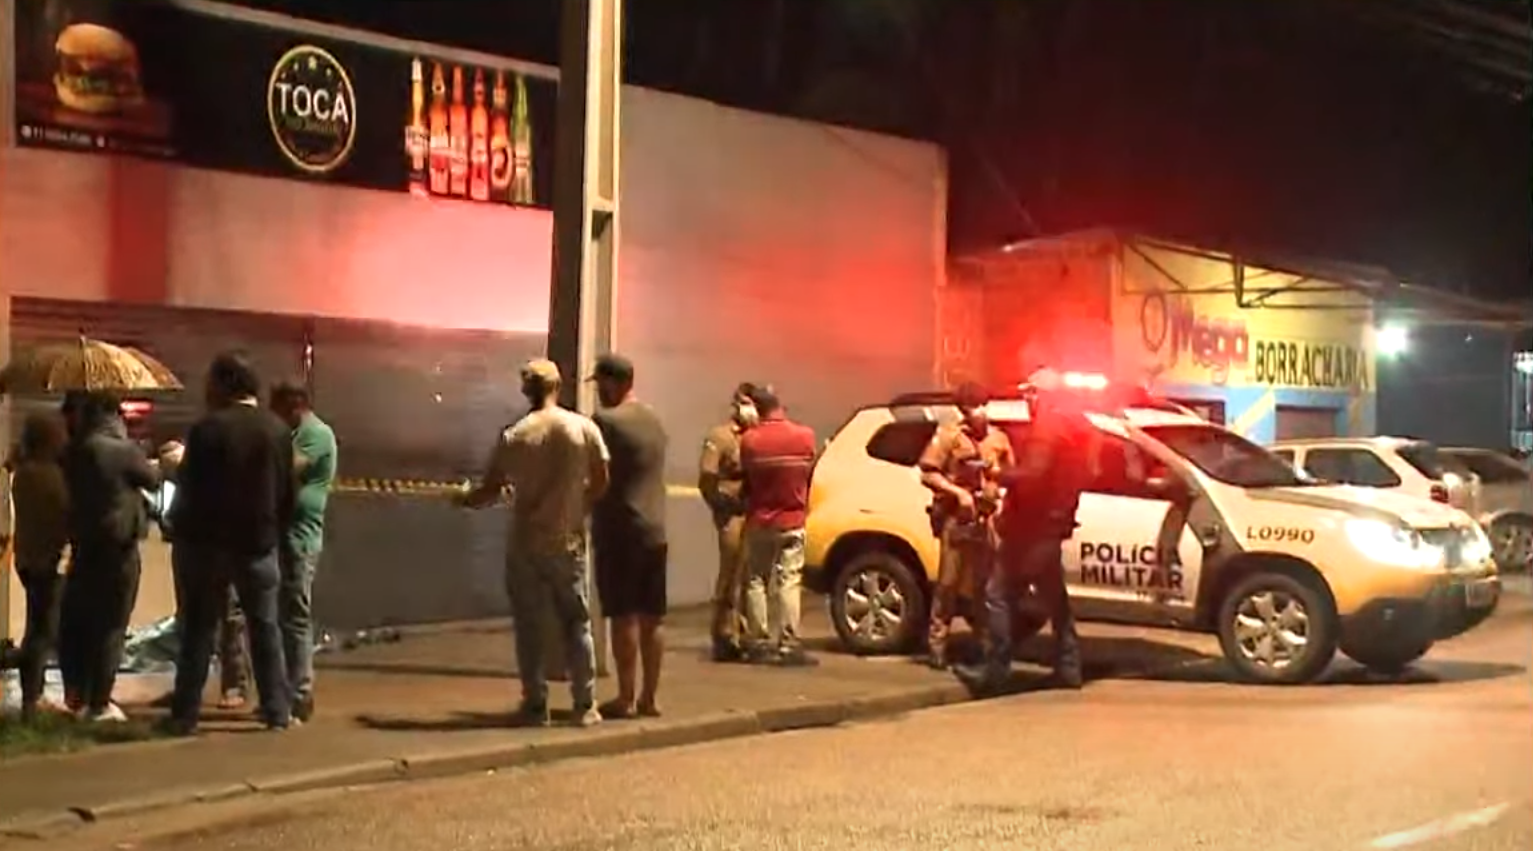  Suspeitos de assassinato em bar em Araucária são identificados pela polícia 